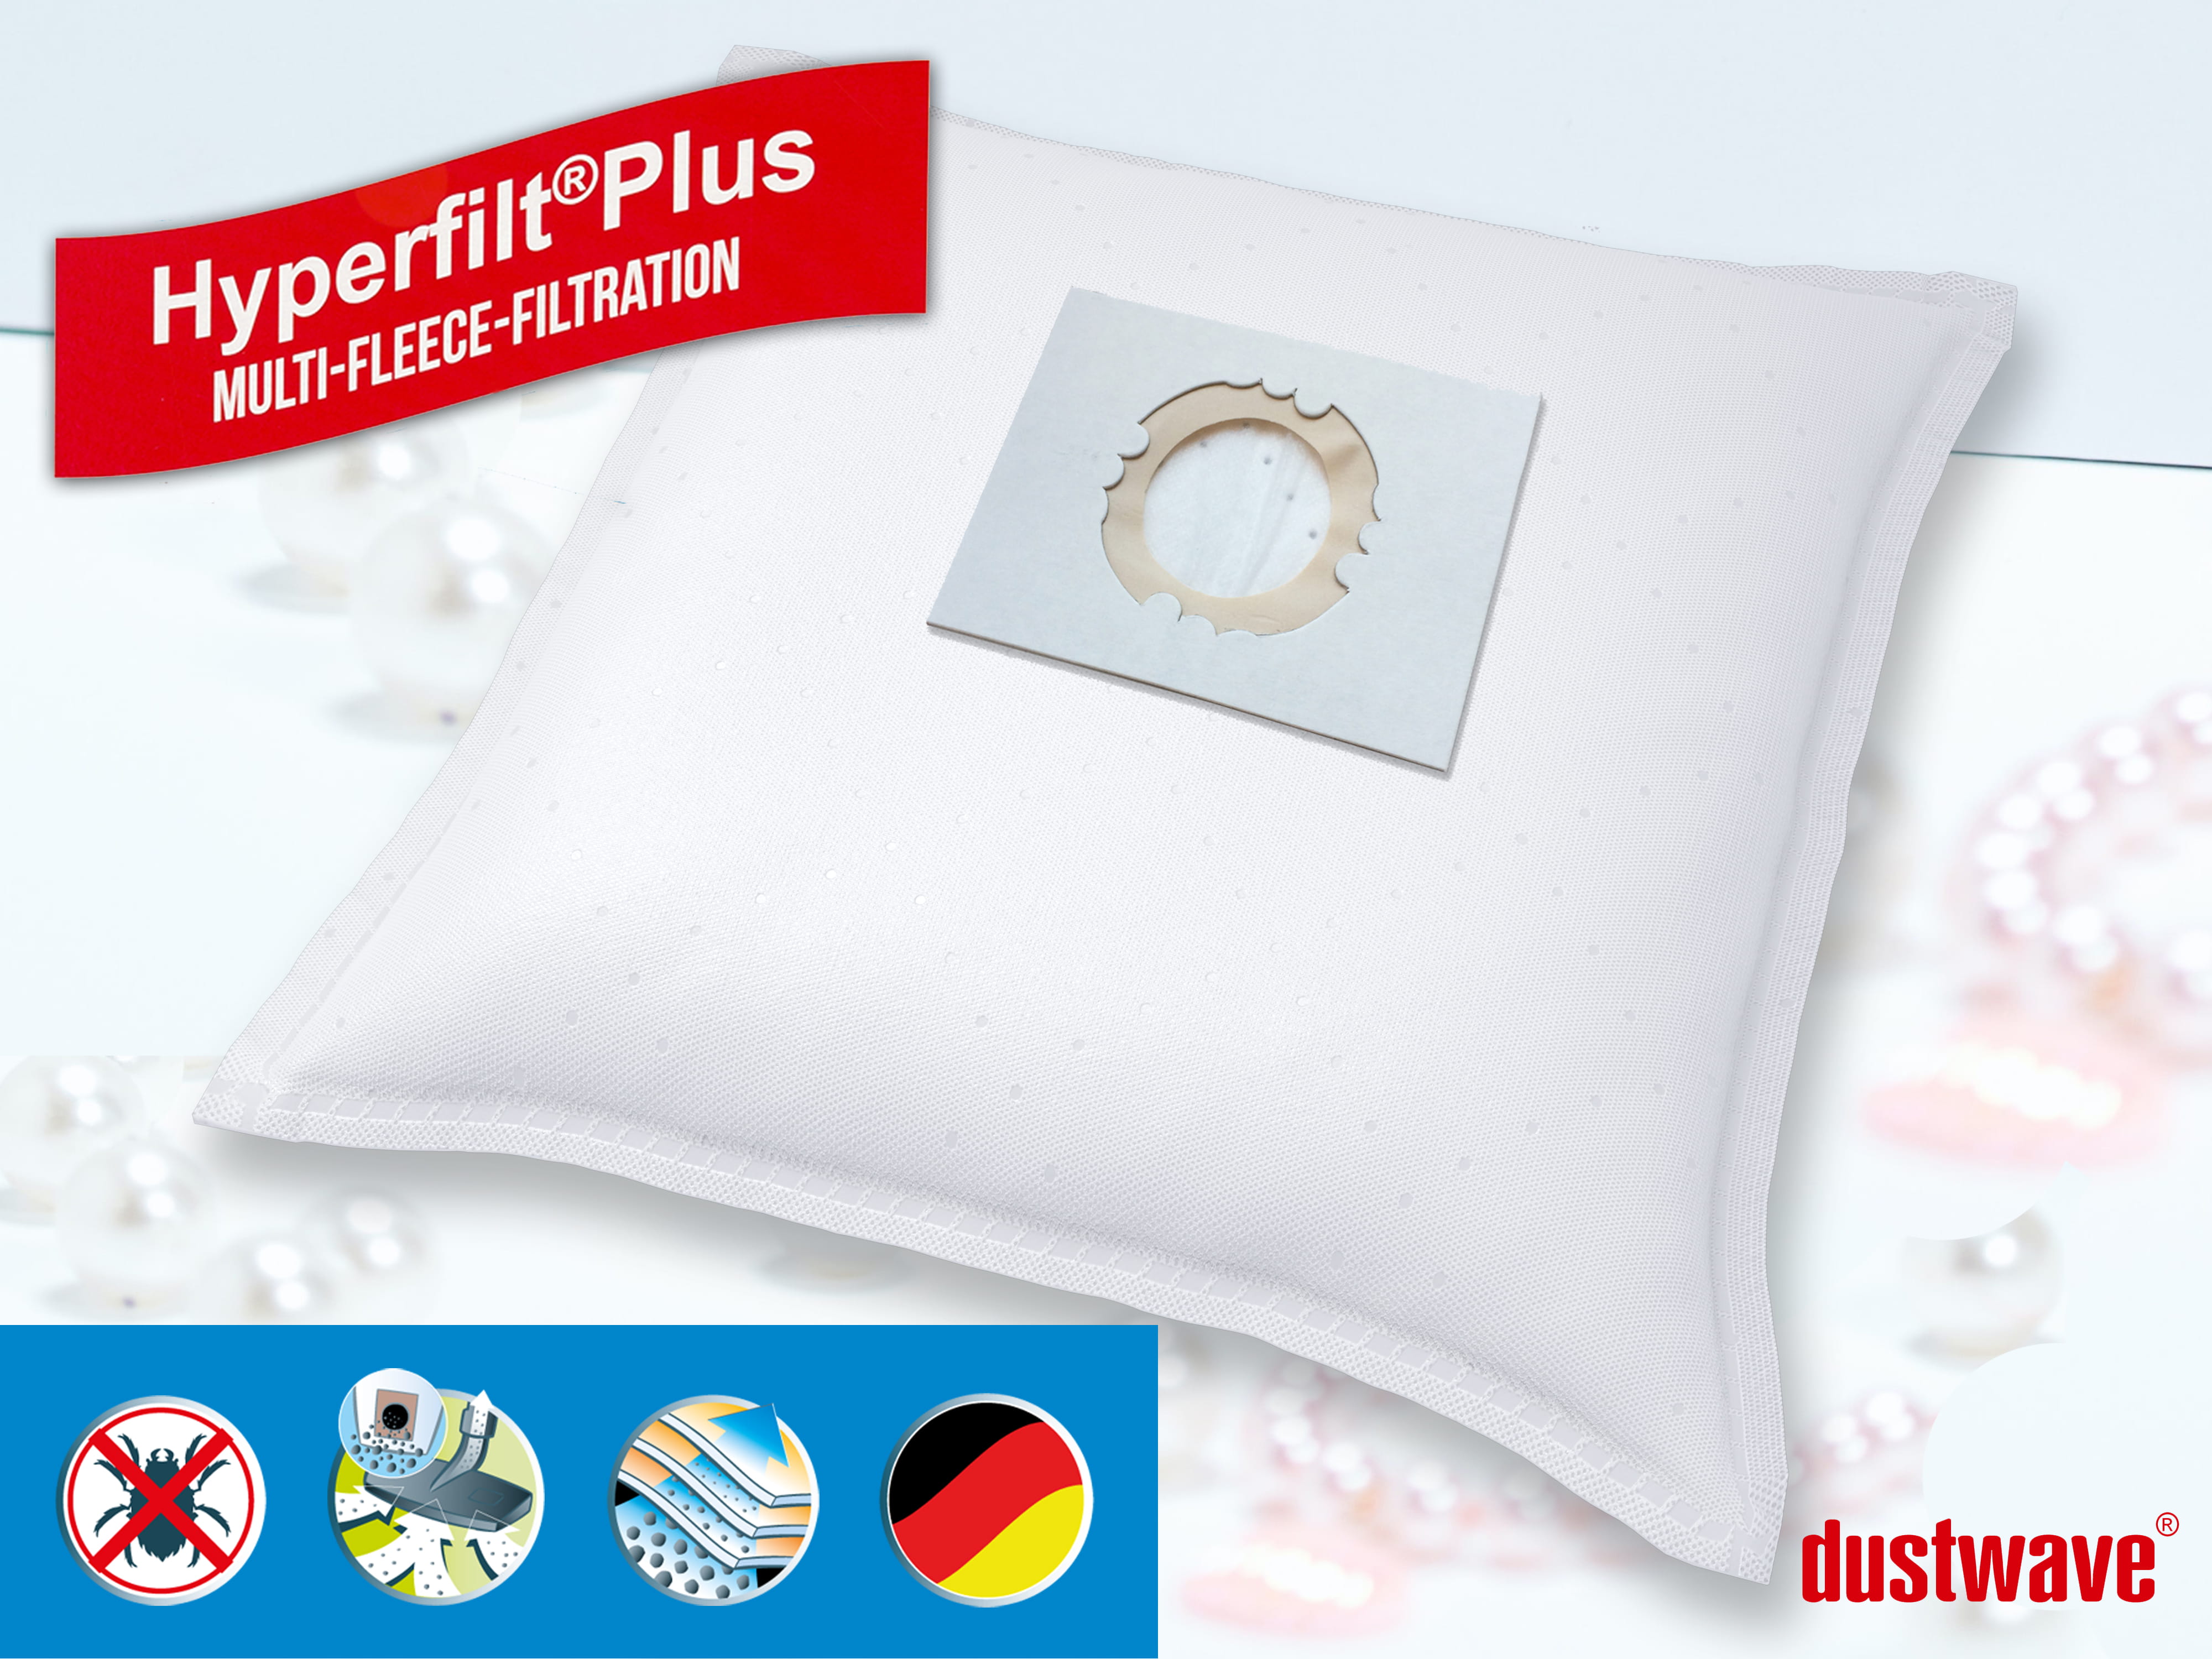 Dustwave® 1 Staubsaugerbeutel für AEG Multi 300 - hocheffizient, mehrlagiges Mikrovlies mit Hygieneverschluss - Made in Germany